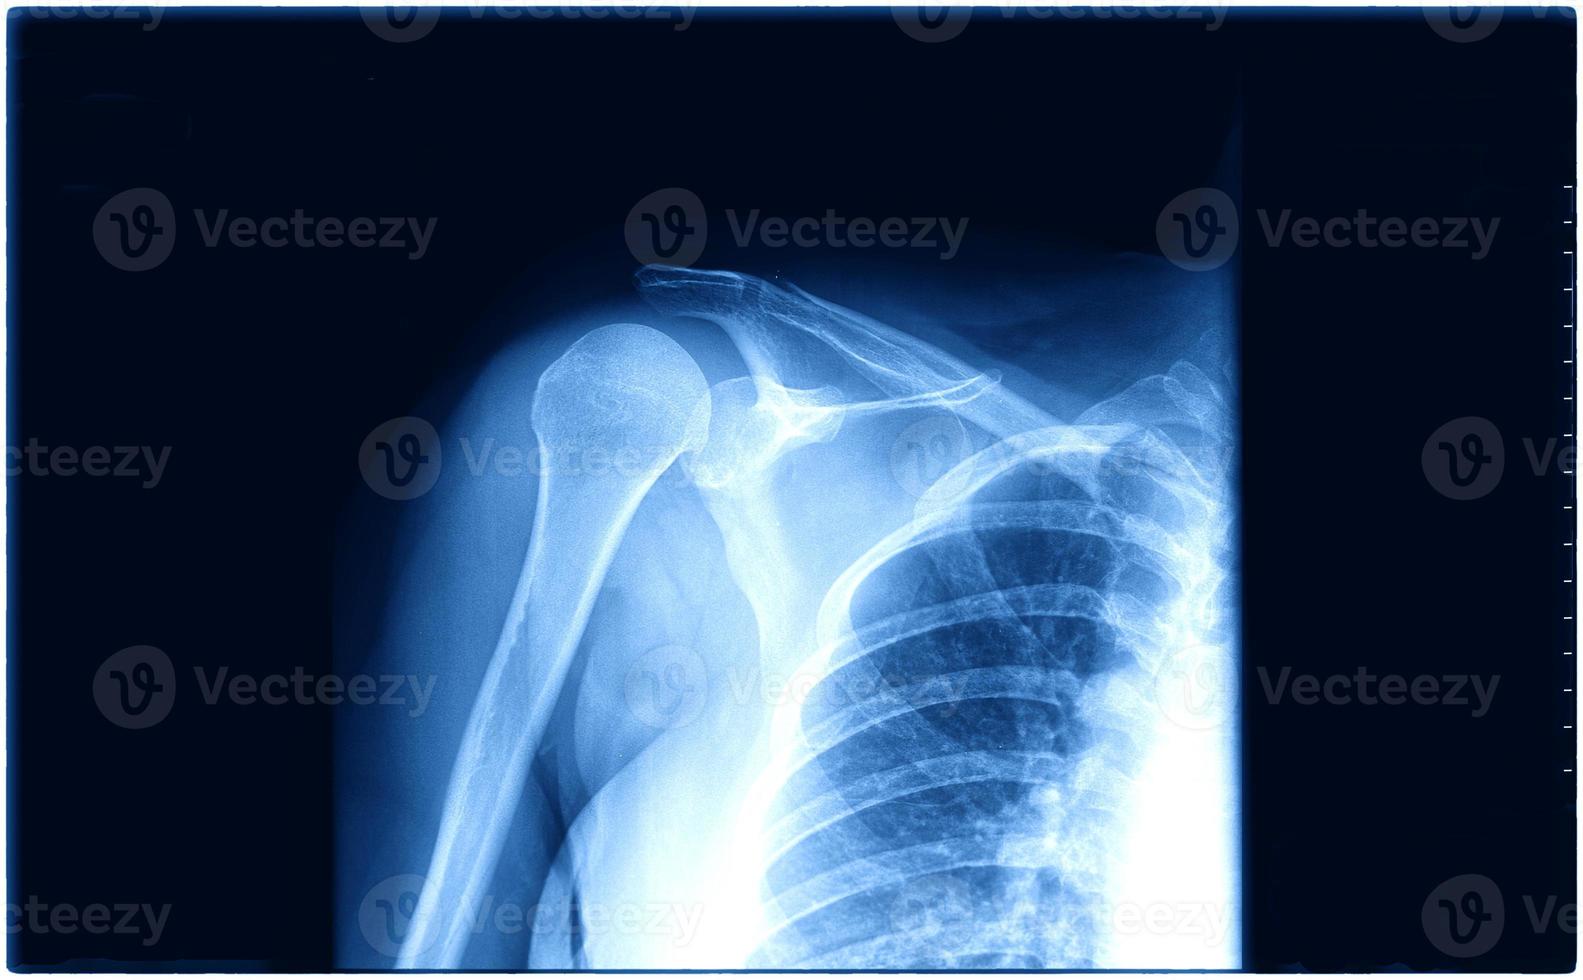 radiographie de la poitrine humaine pour un diagnostic médical photo